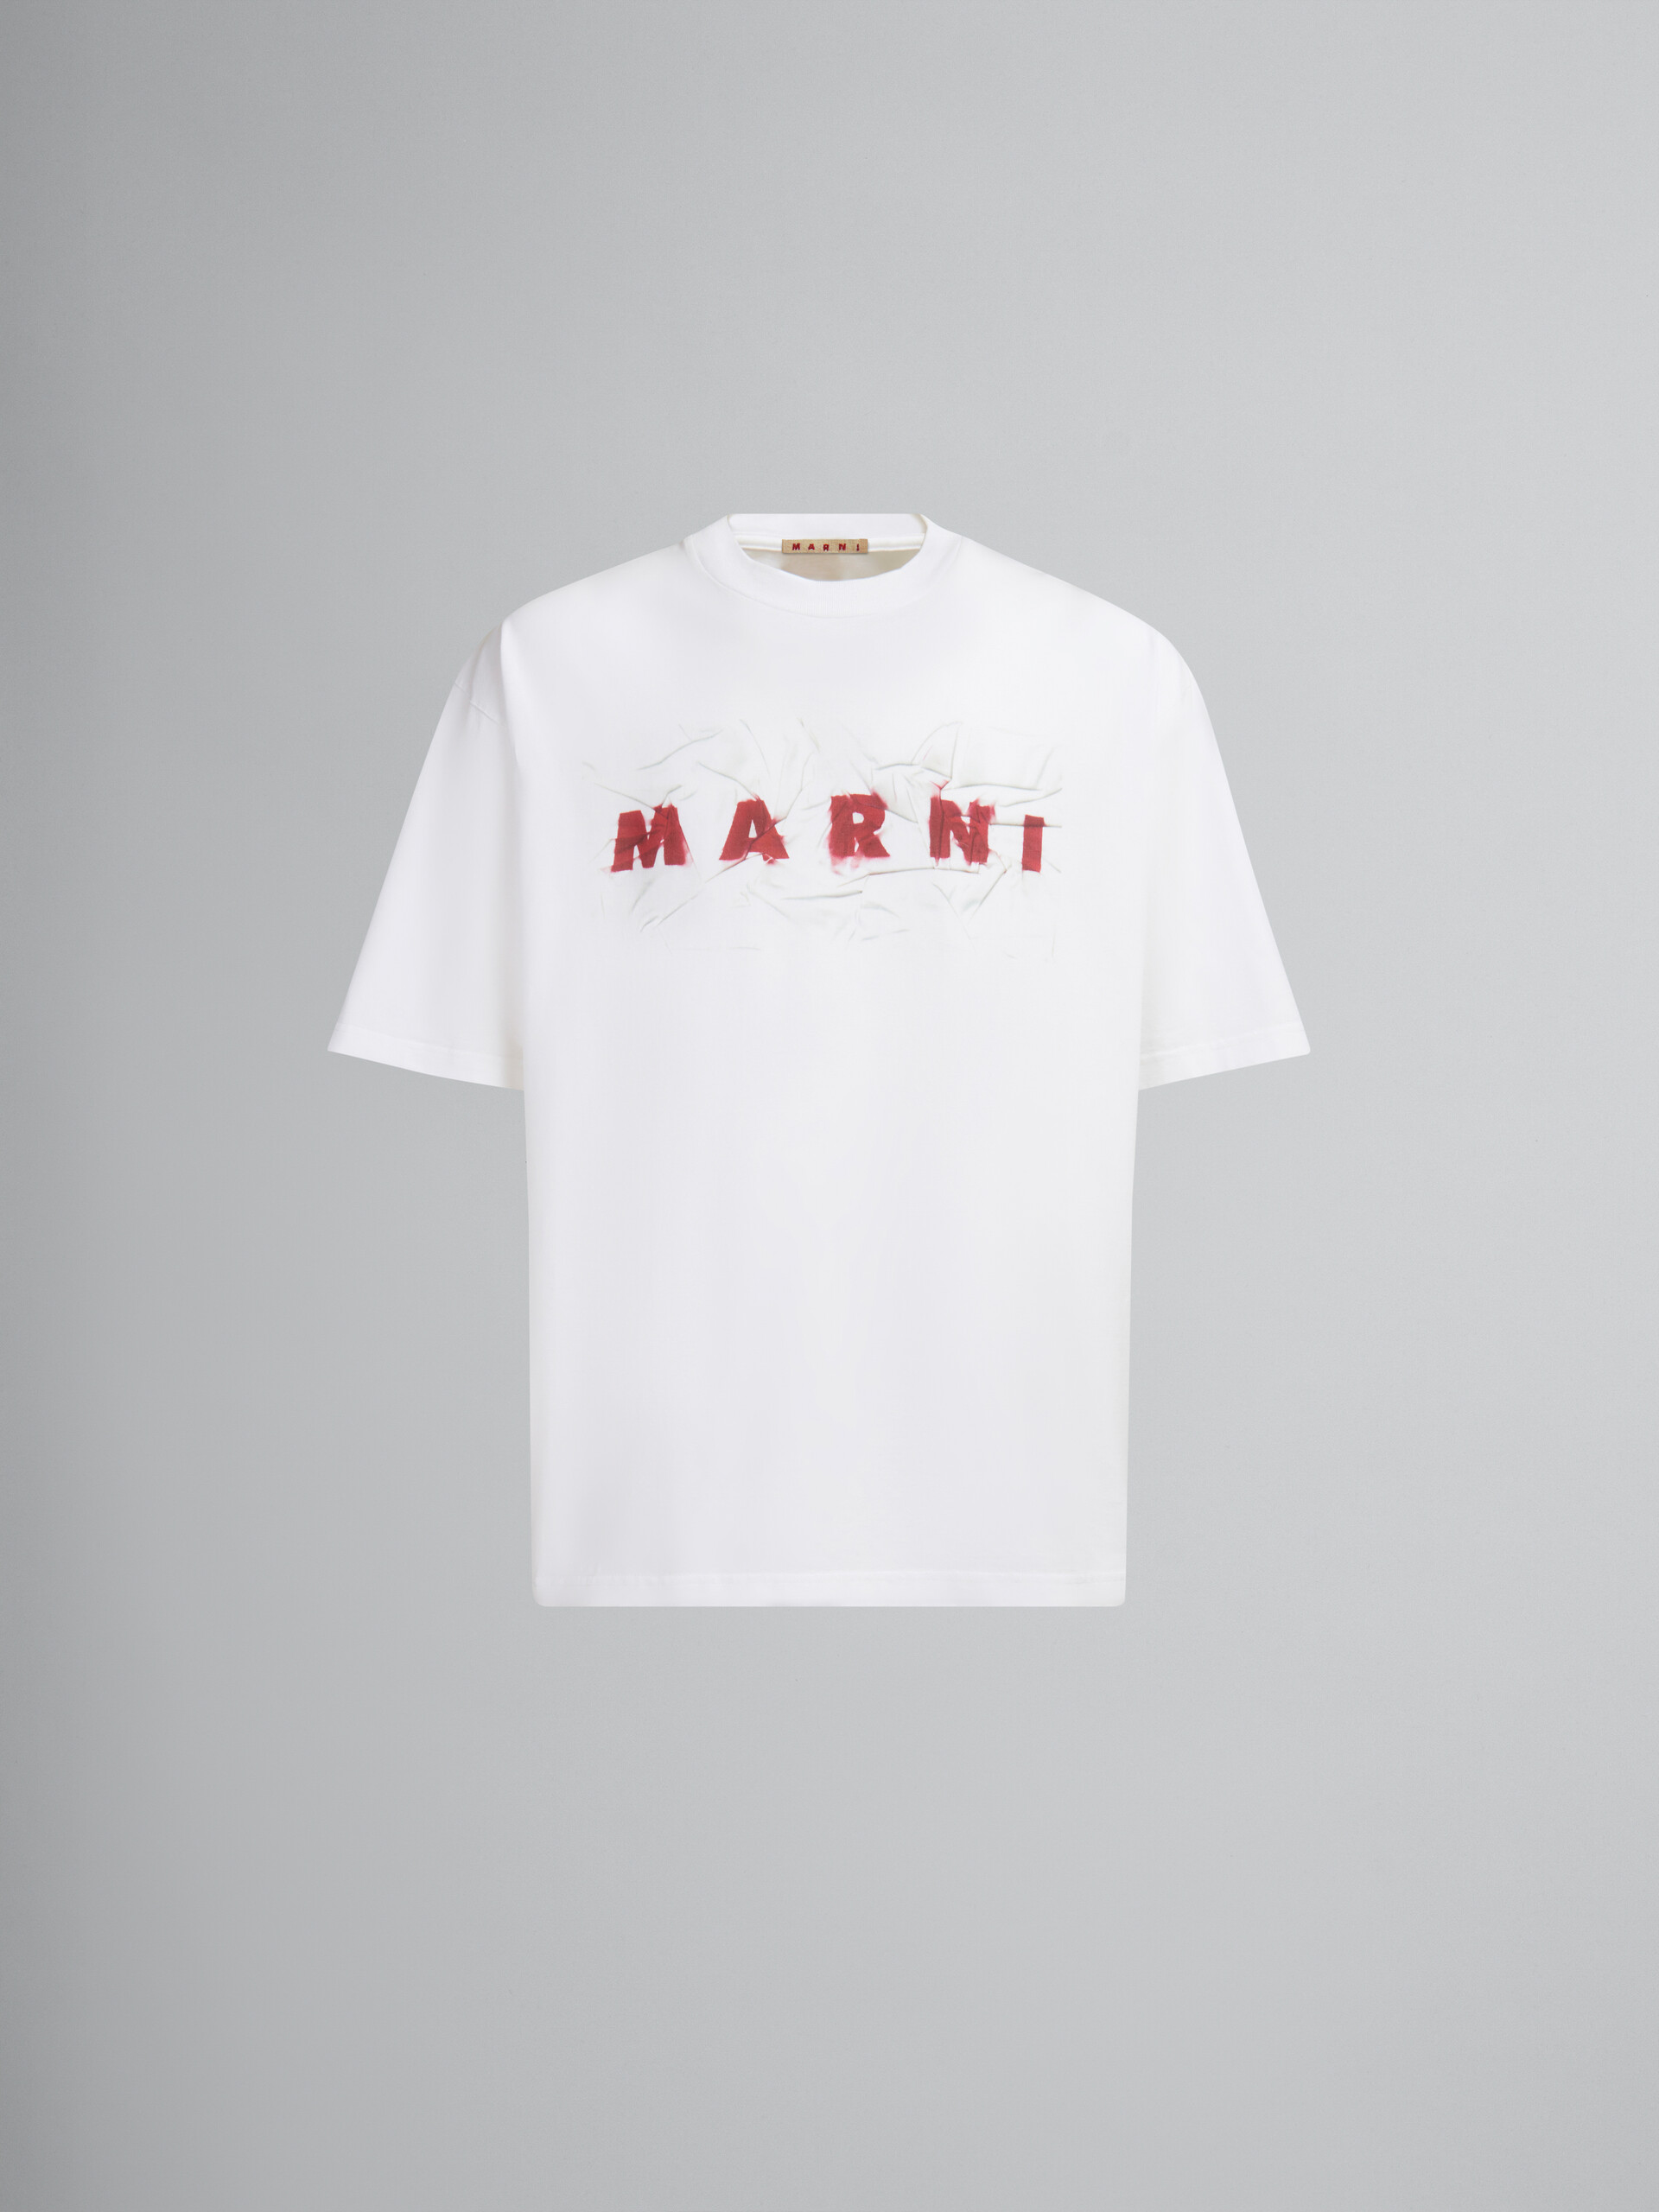 링클 마르니 로고 장식 오가닉 화이트 코튼 티셔츠 - 티셔츠 - Image 1